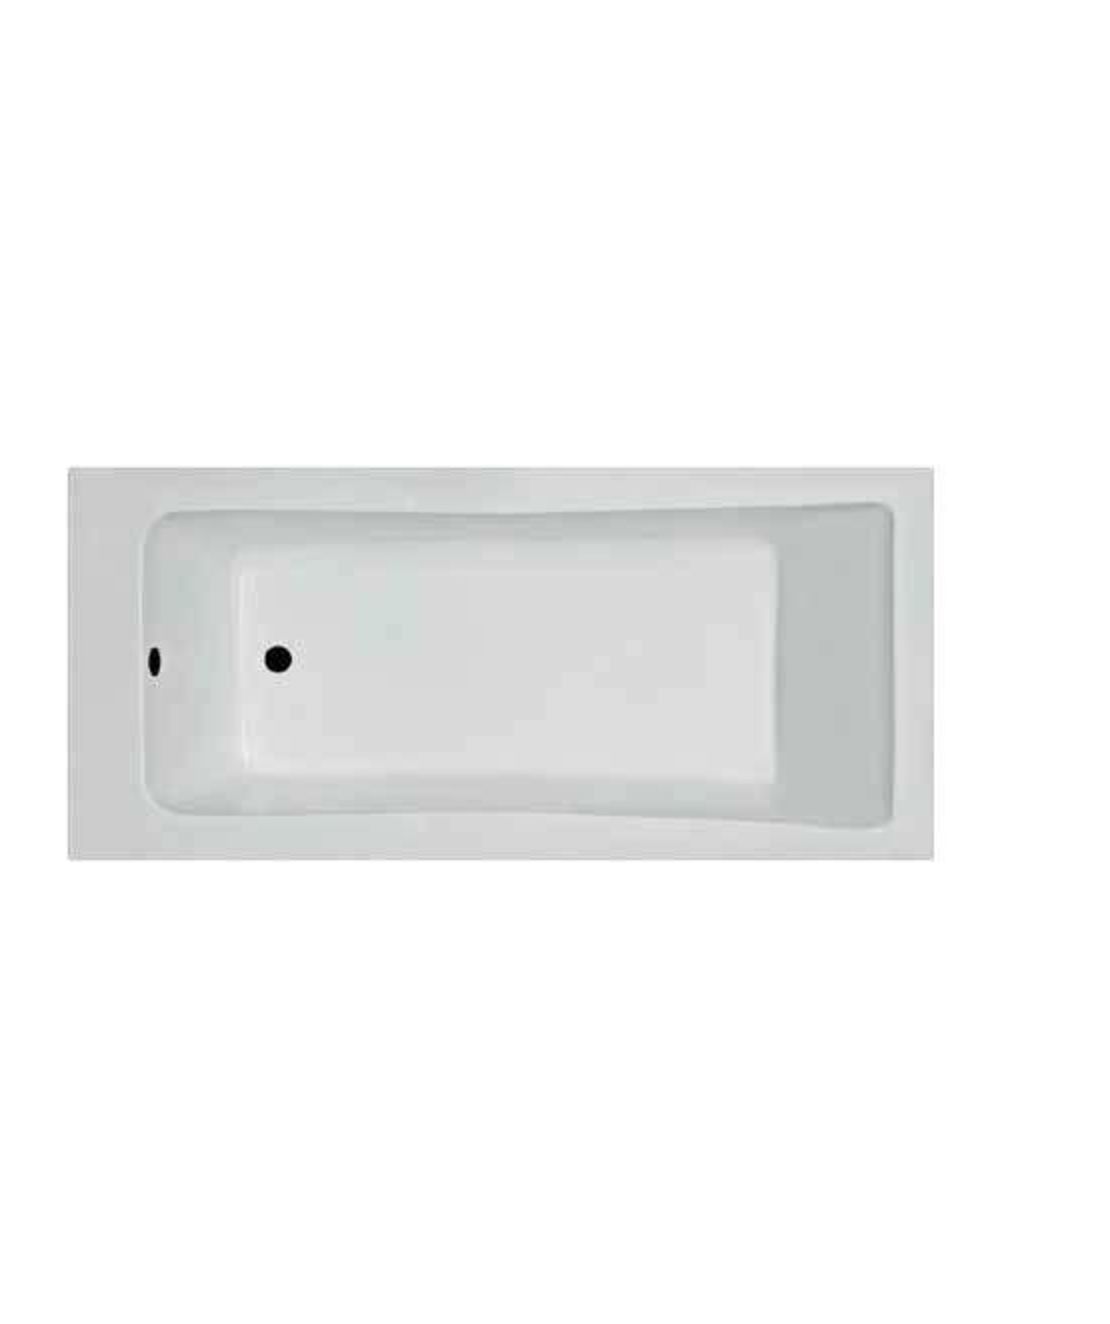 ע- אמבטיה אקרילית לבנה 140 * 70 דגם אוריון פרופילון PR468040